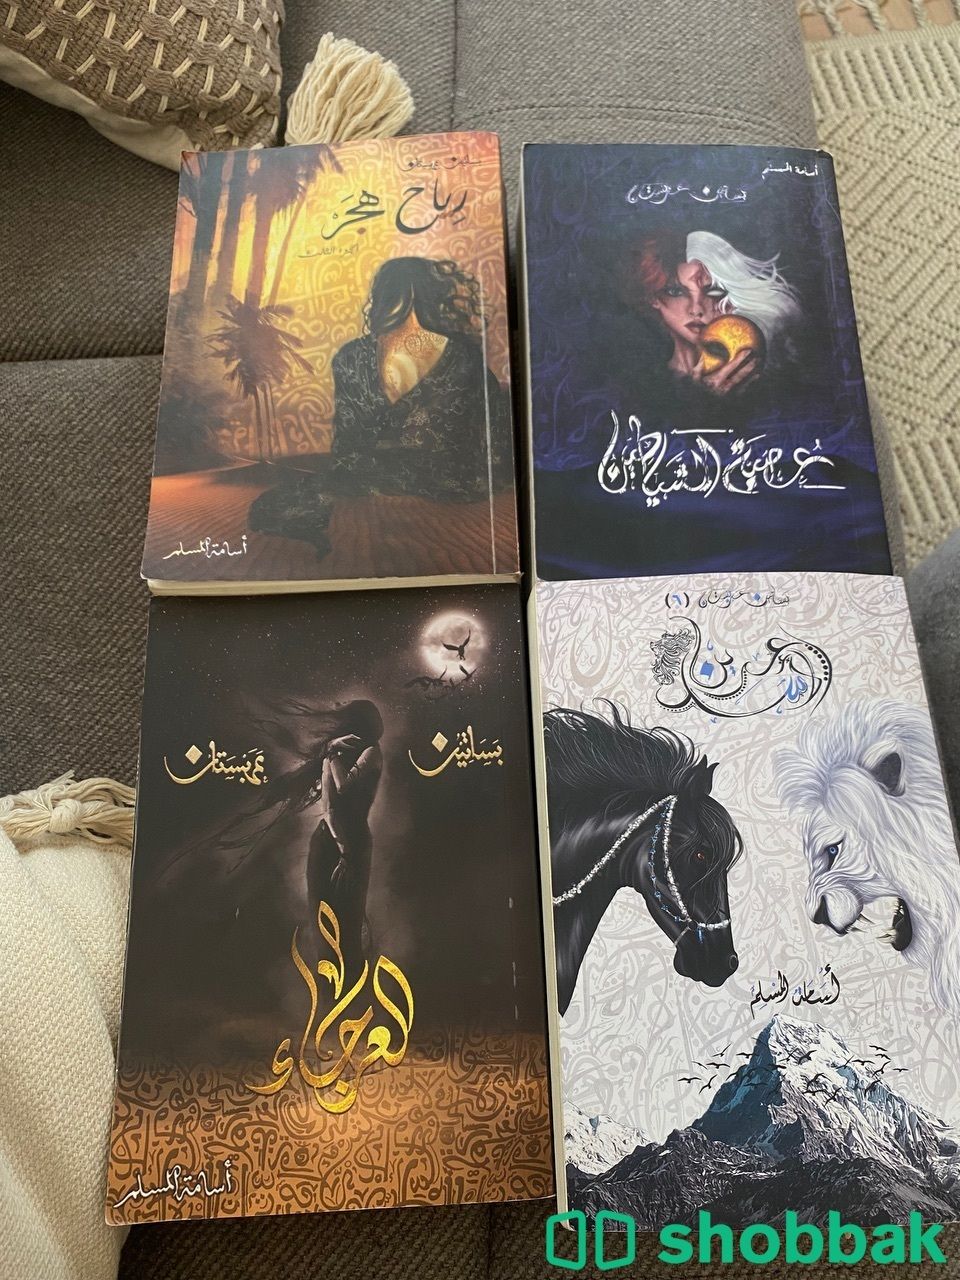 كتب اسامه المسلم سلسلة بساتين عربستان Shobbak Saudi Arabia